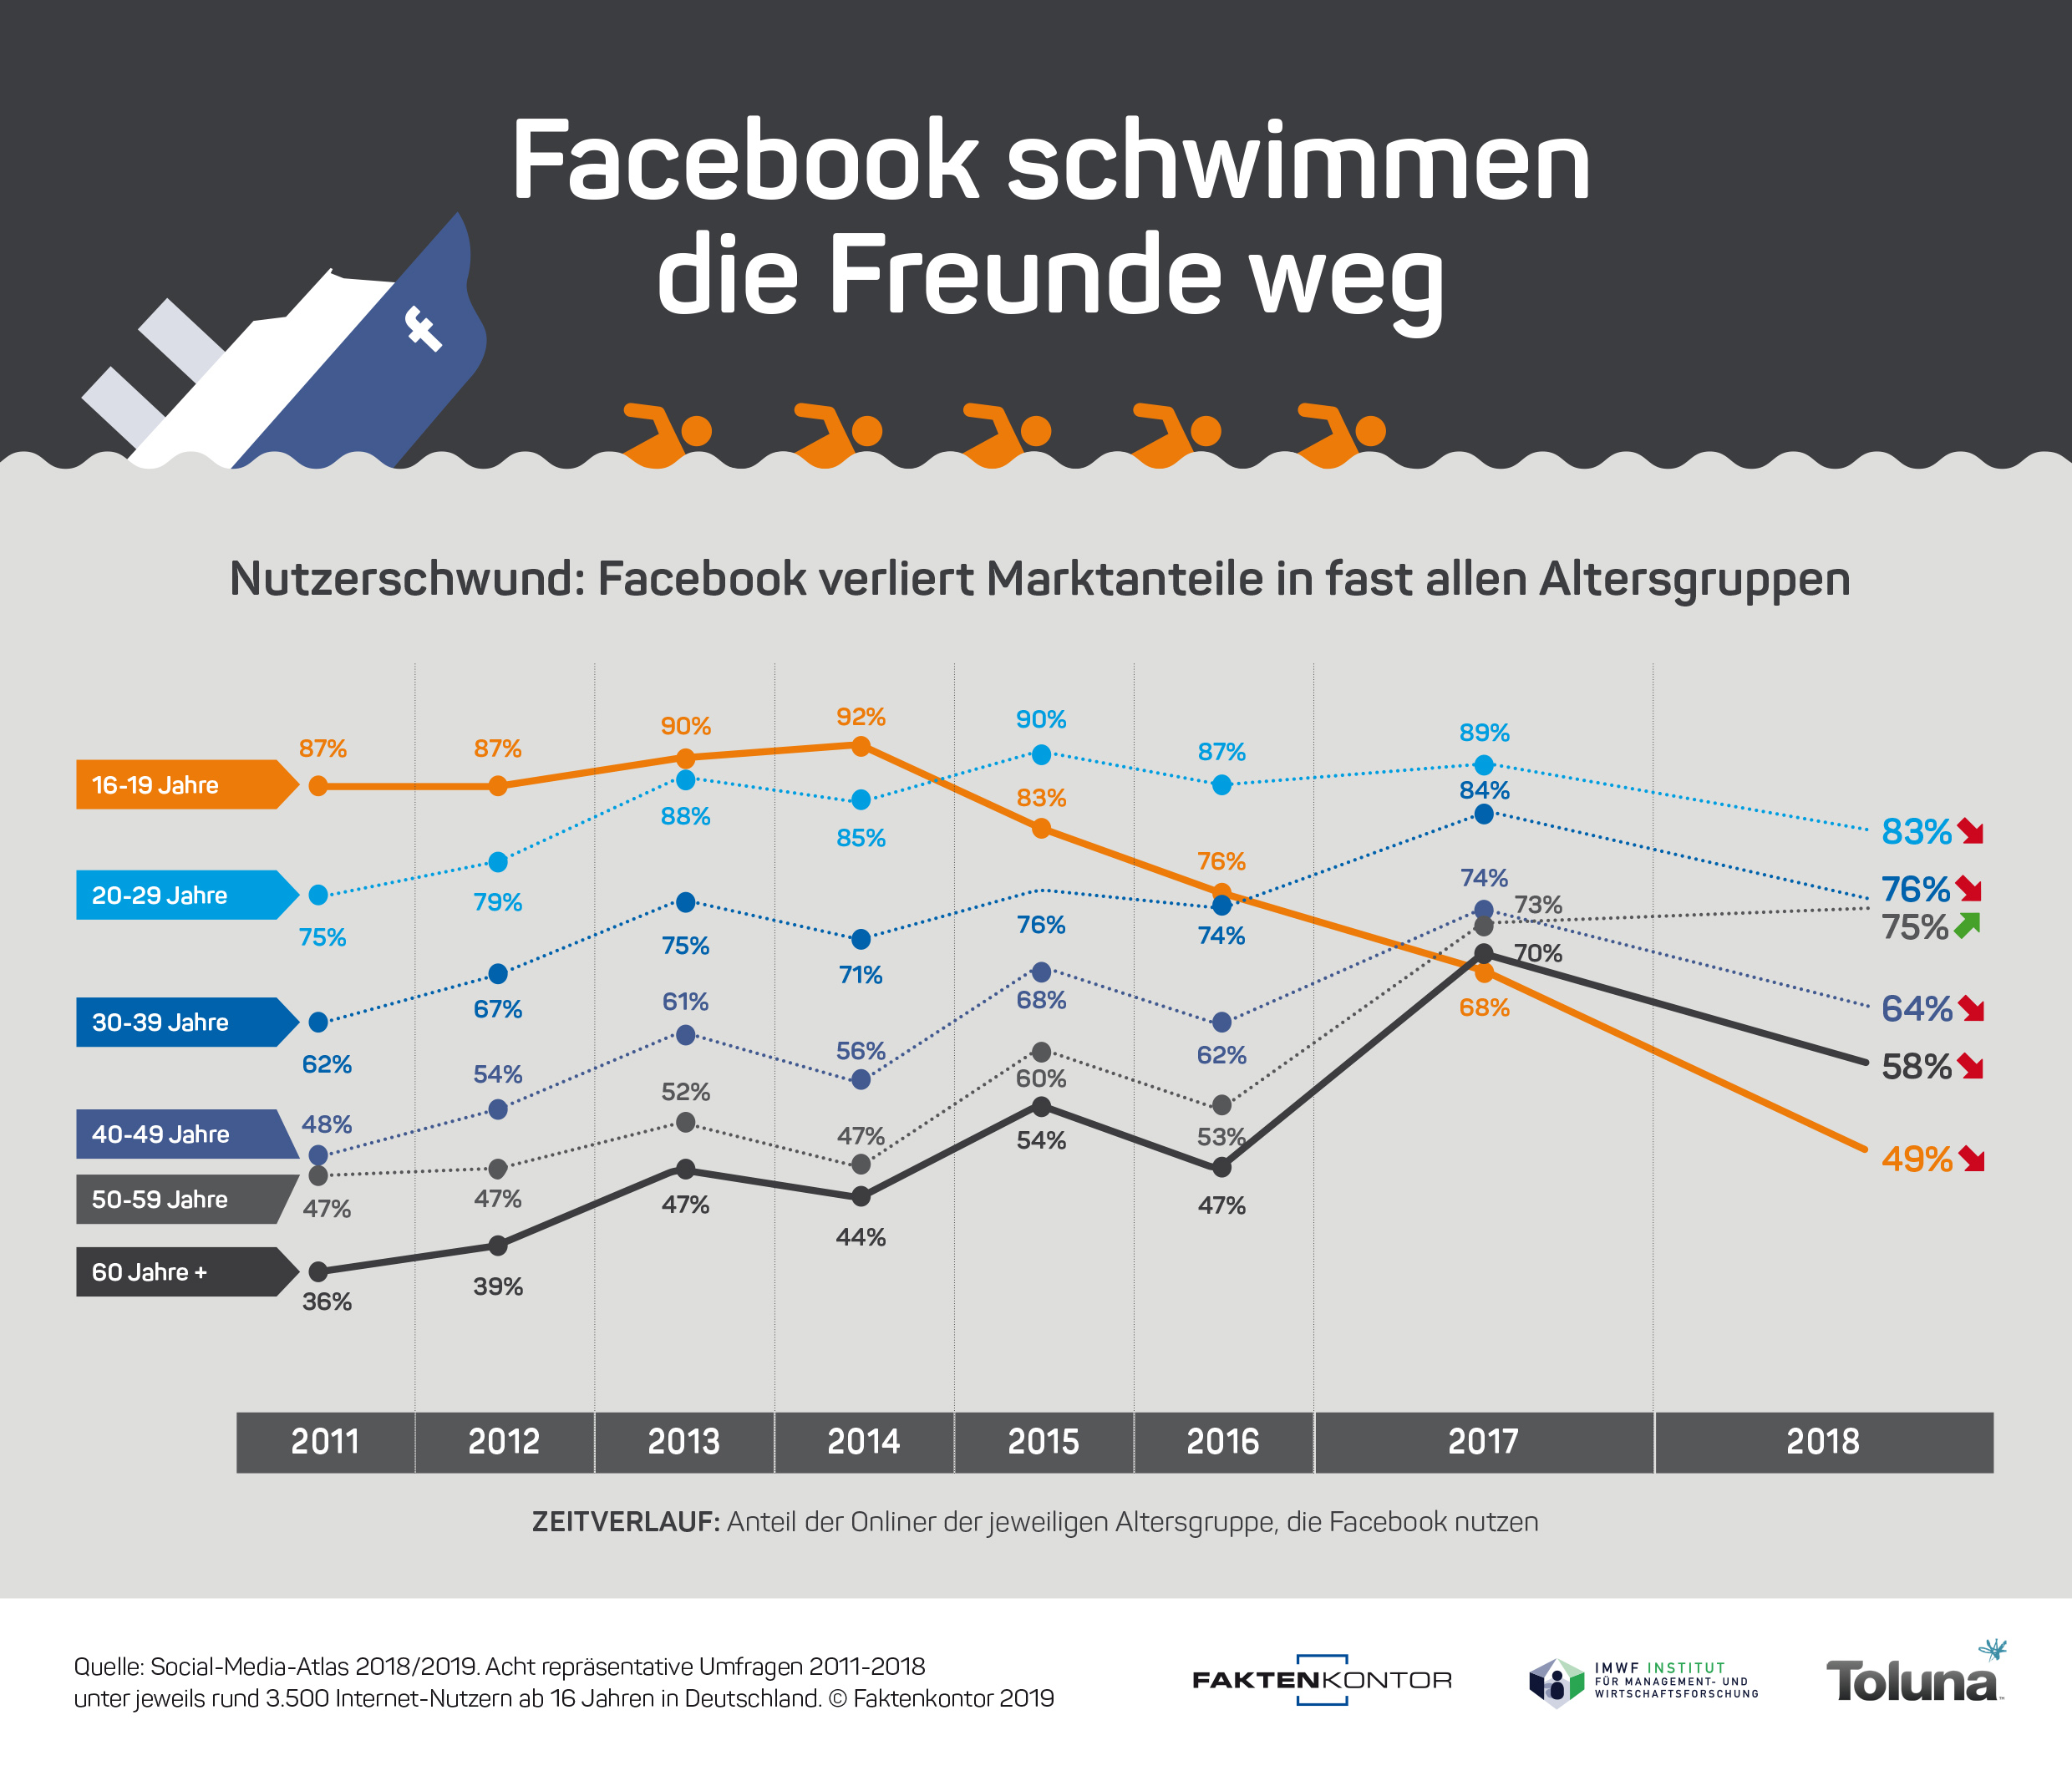 Infografik "Facebook schwimmen die Freunde weg" - Anteil der Facebook-Nutzer nach Altersgruppen von 2011-2018 laut der Faktenkontor-Studie "Social-Media-Atlas 2018-2019"